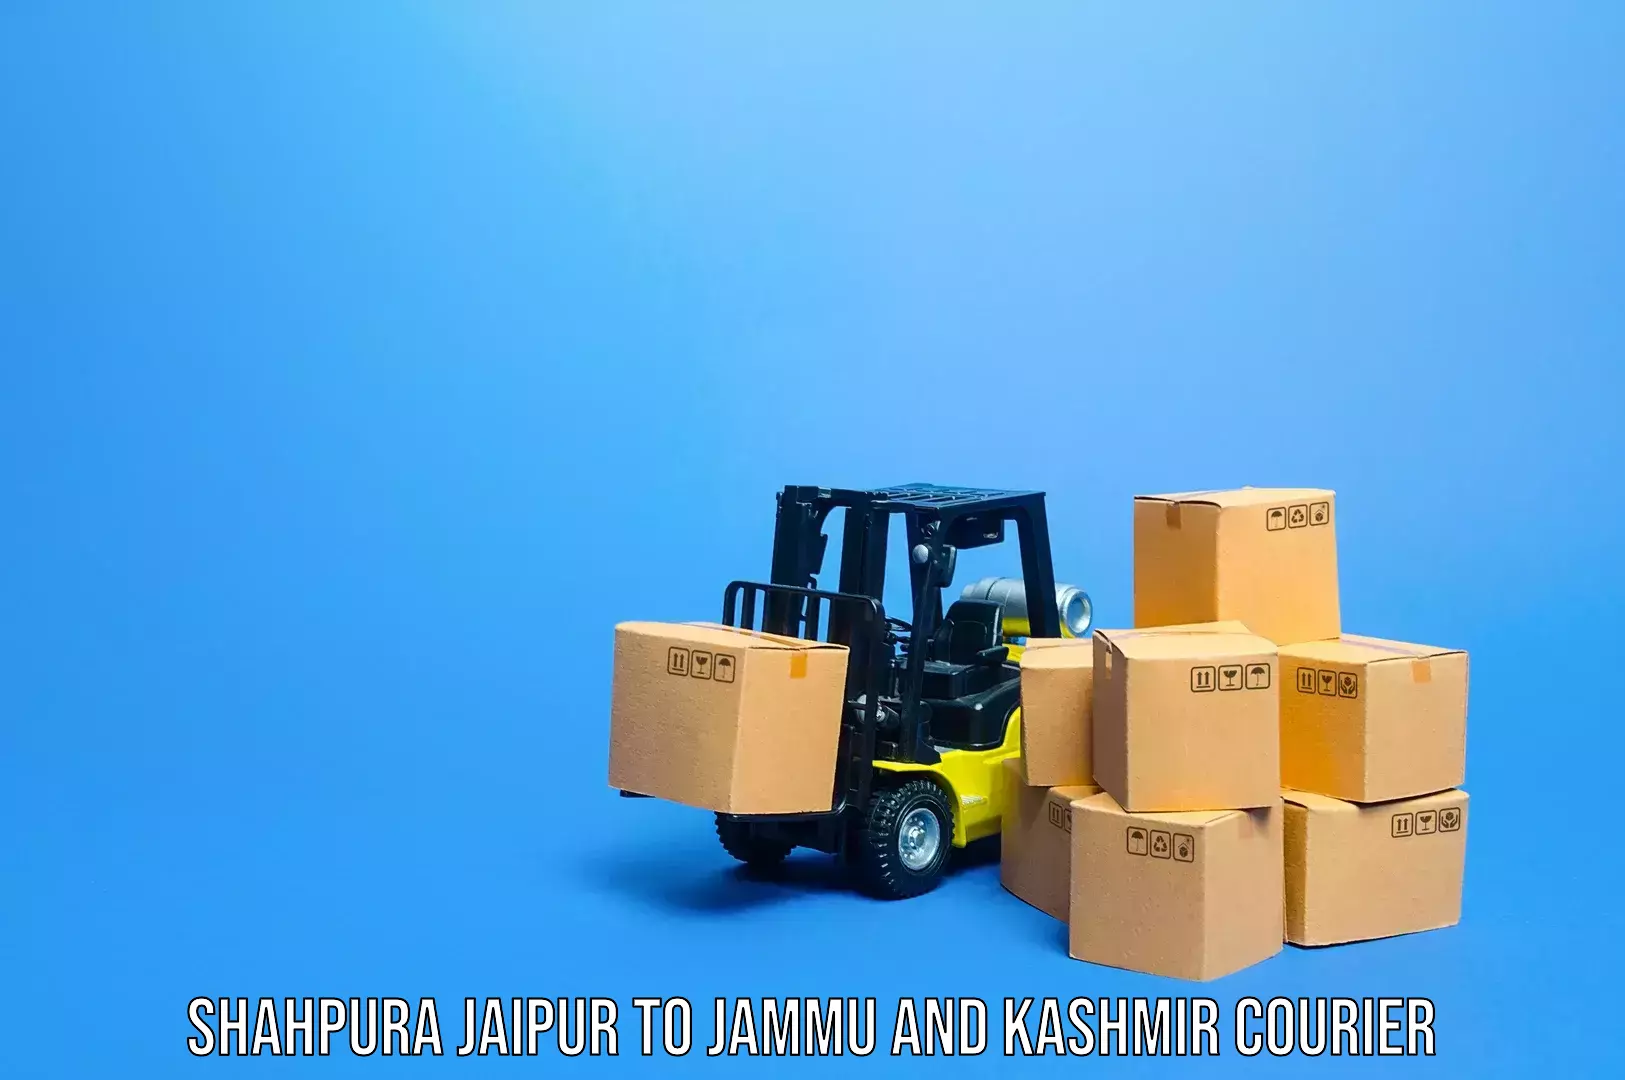 Automated luggage transport Shahpura Jaipur to Kupwara